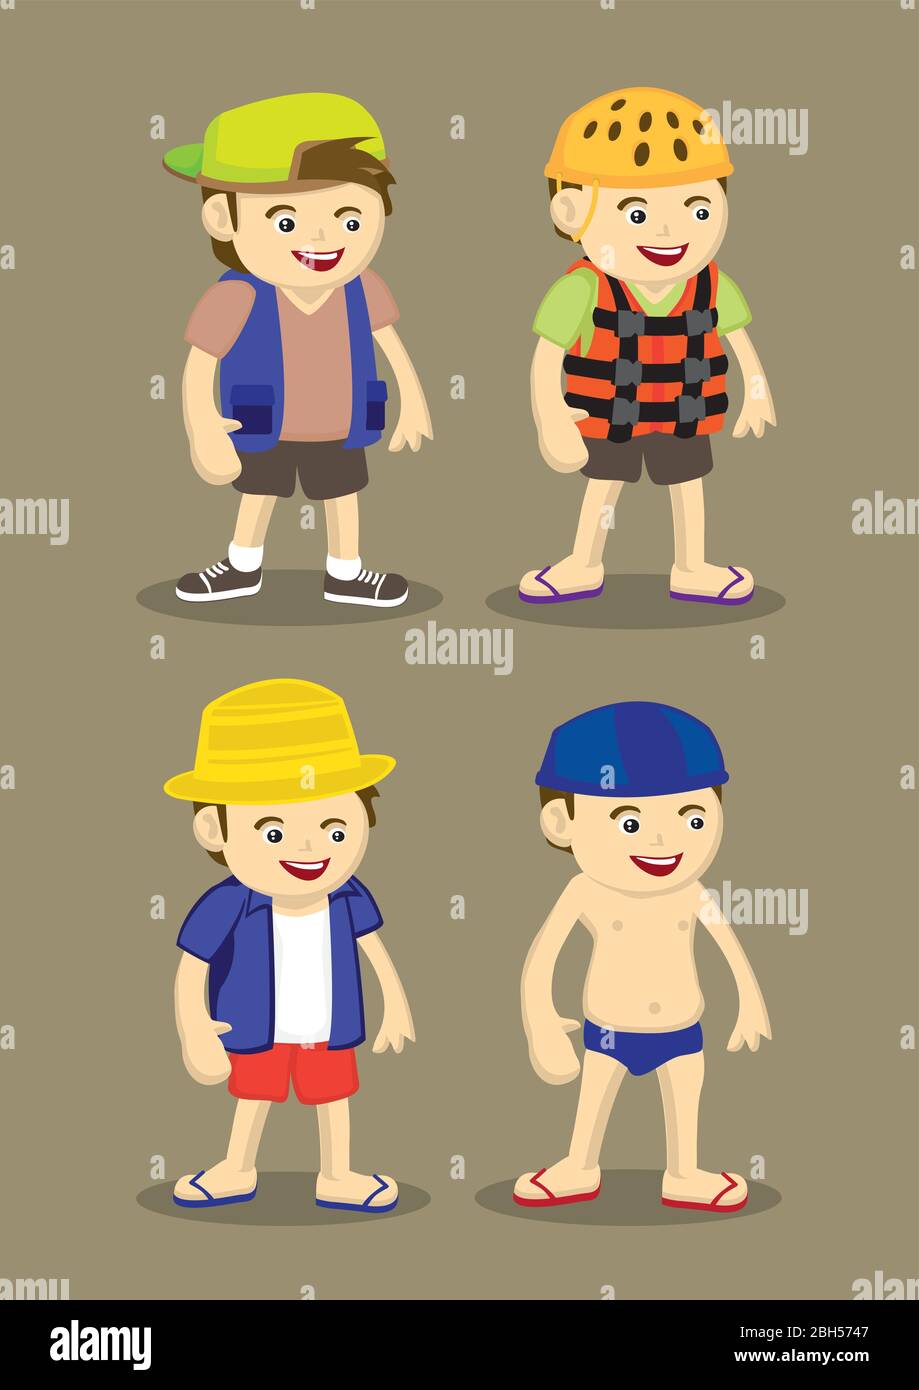 Vektor-Illustration von Comic-Figuren tragen Kleidung für Sommer  Outdoor-Aktivitäten Stock-Vektorgrafik - Alamy